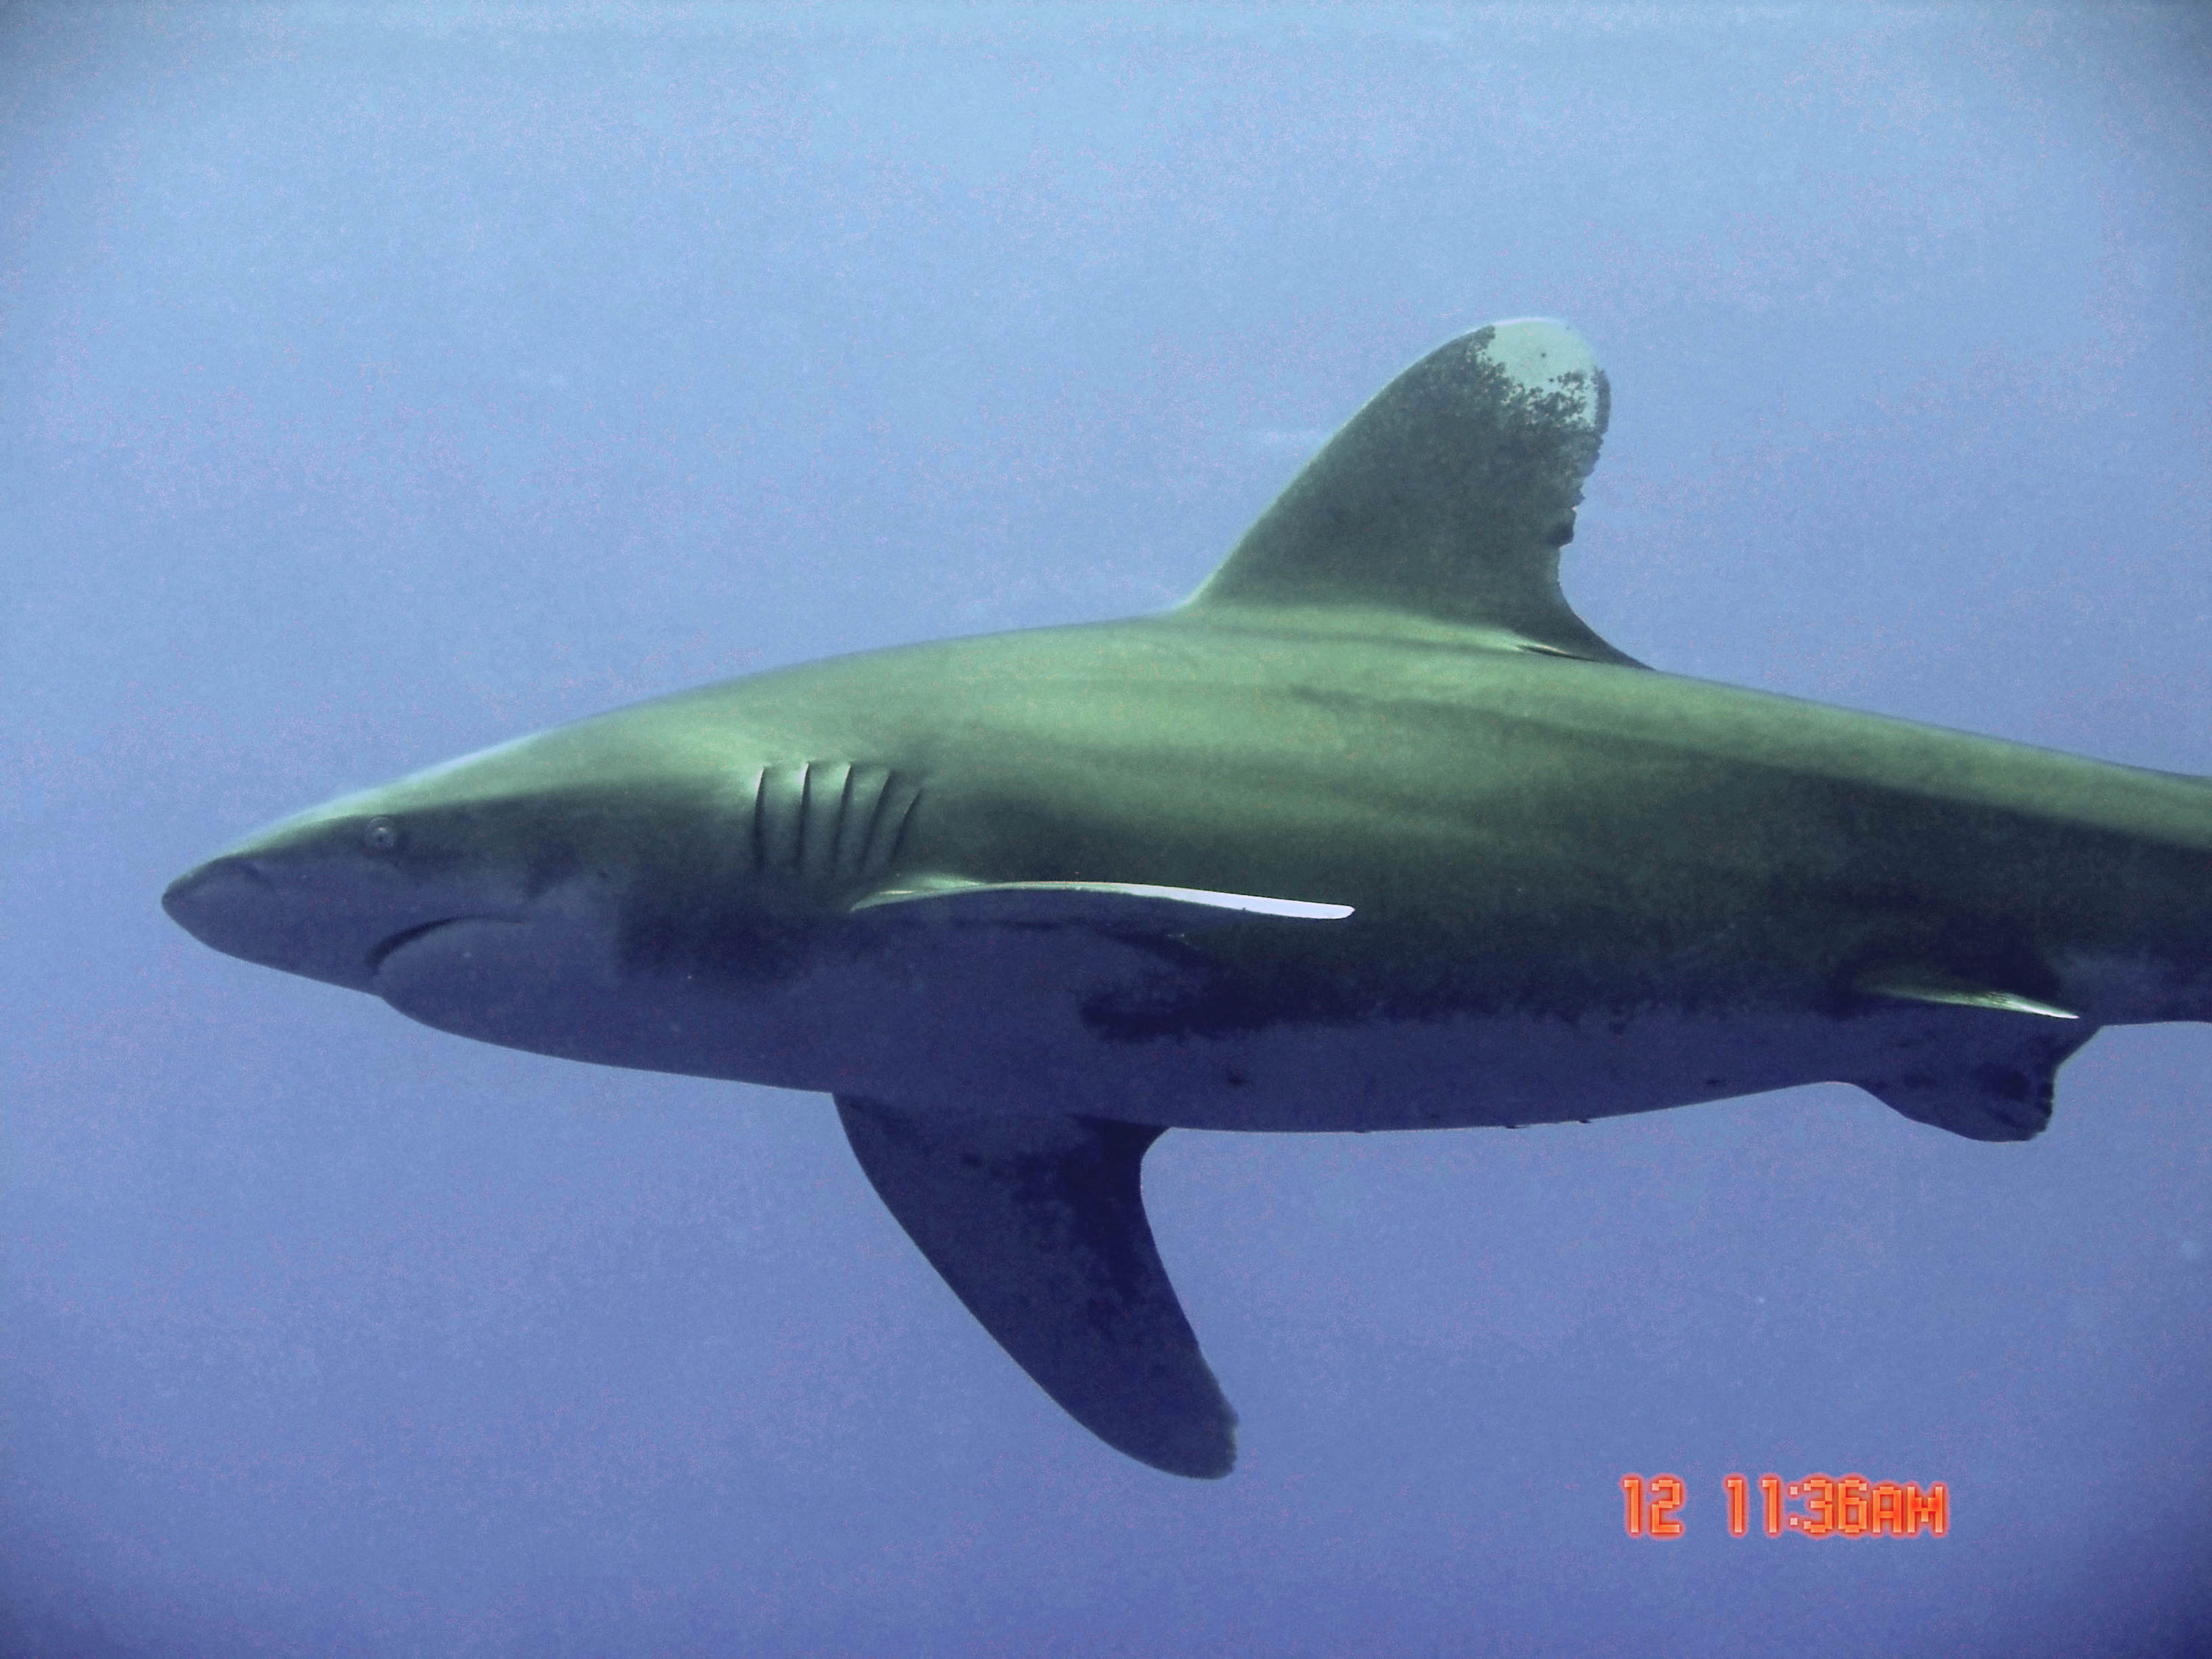 Oceanic White Tip Reef Shark